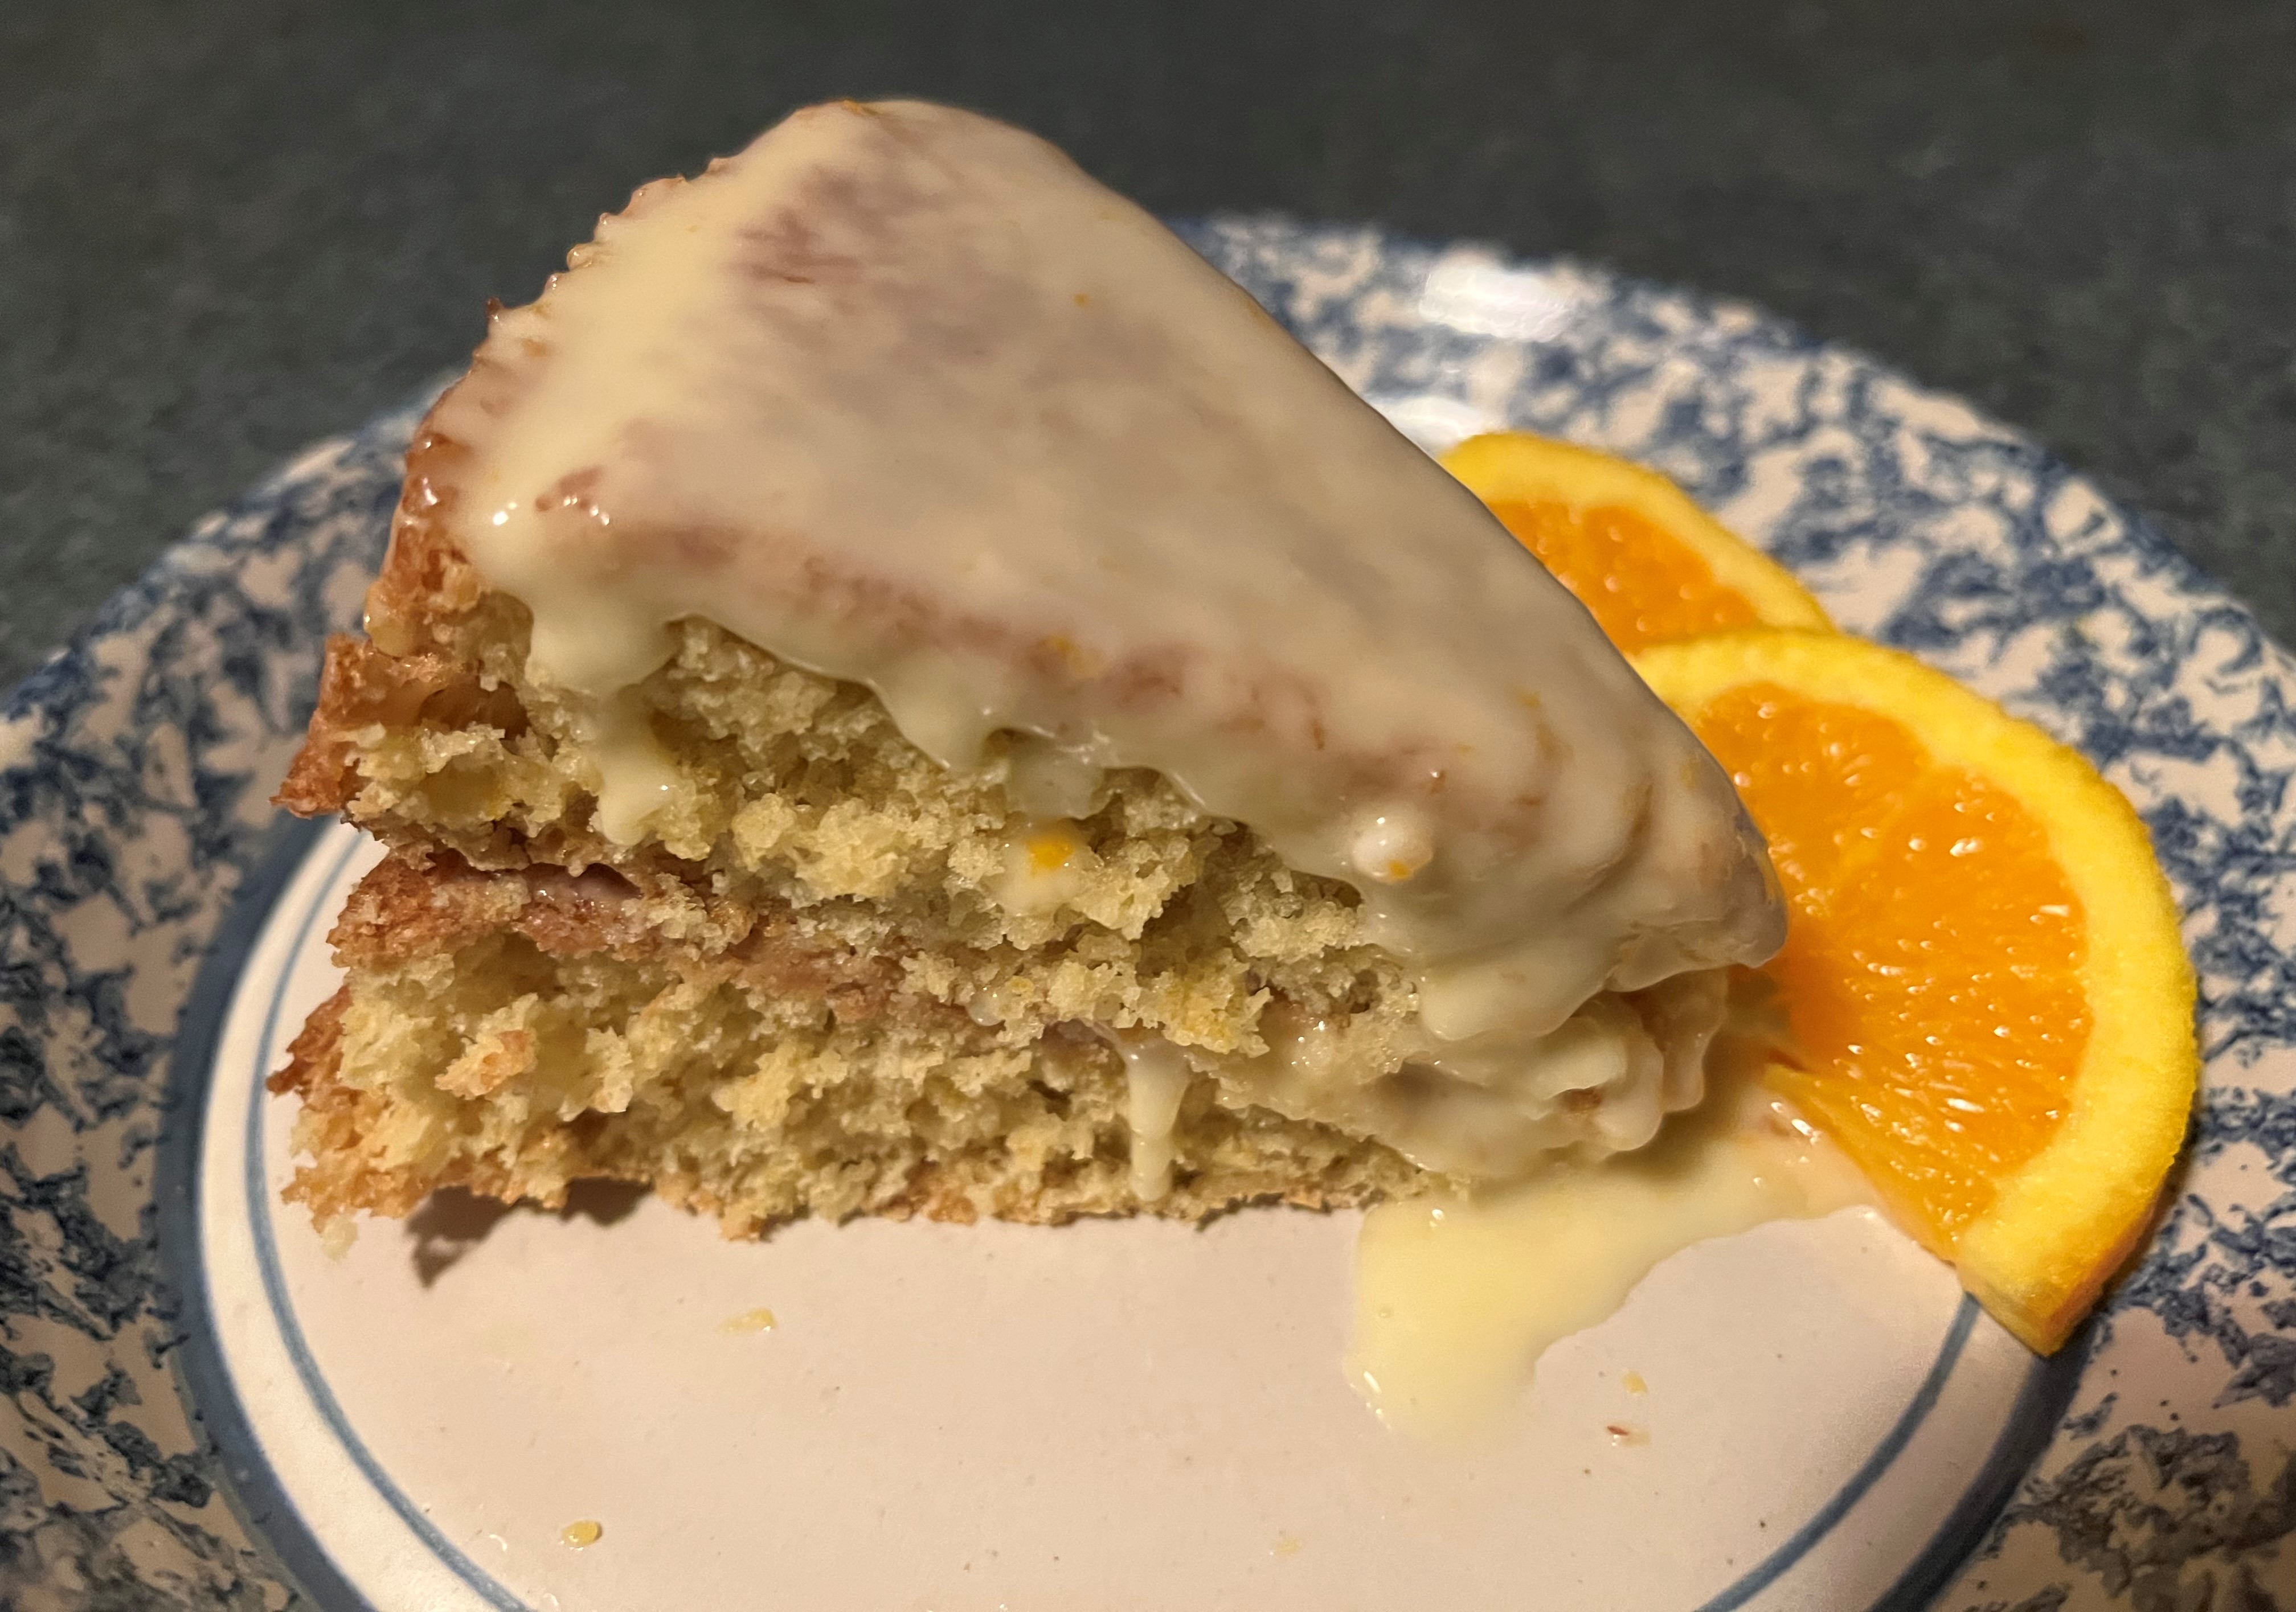 Un trozo de tarta de naranja cubierto de glaseado se encuentra en un plato junto a dos rodajas de naranja.